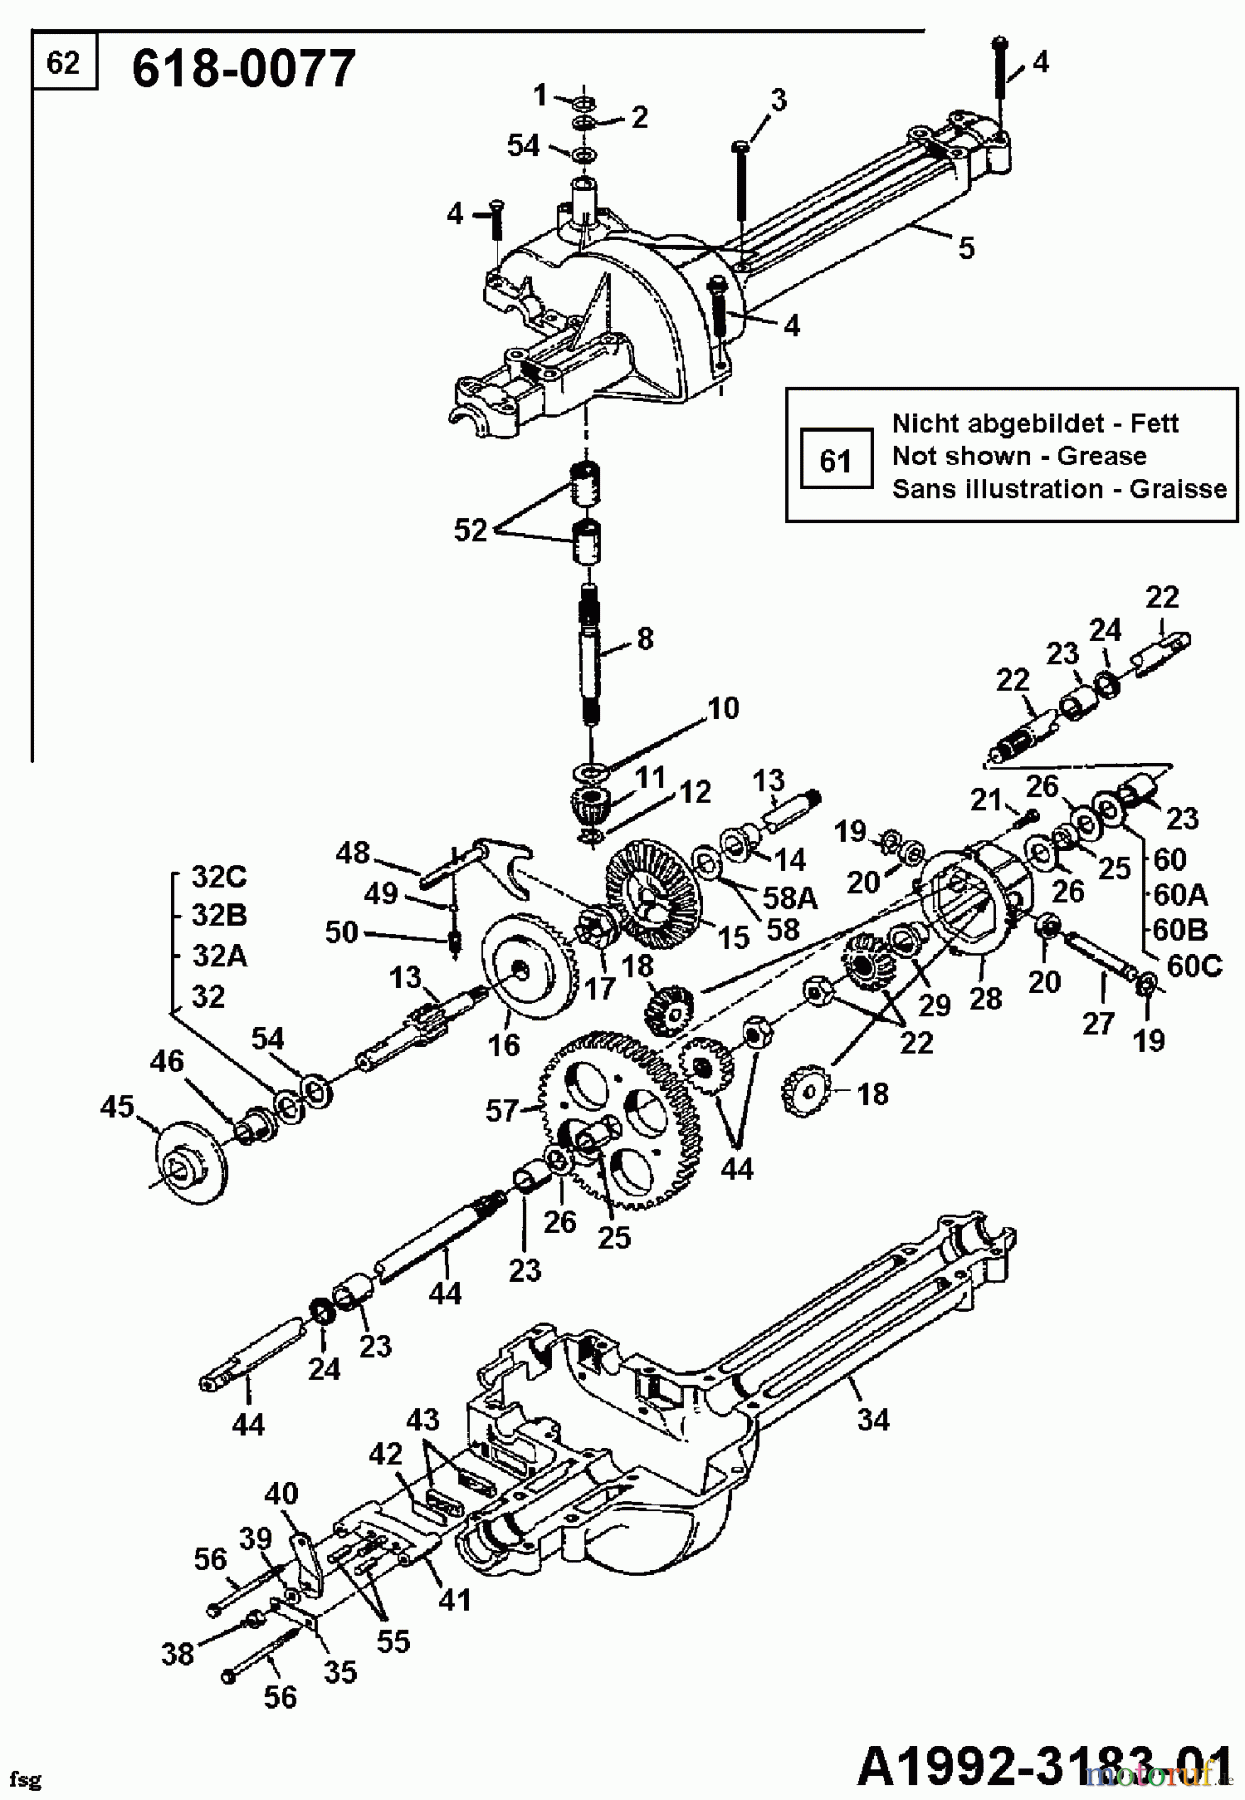  Mastercut Lawn tractors 10/810 135B451D602  (1995) Gearbox 618-0077